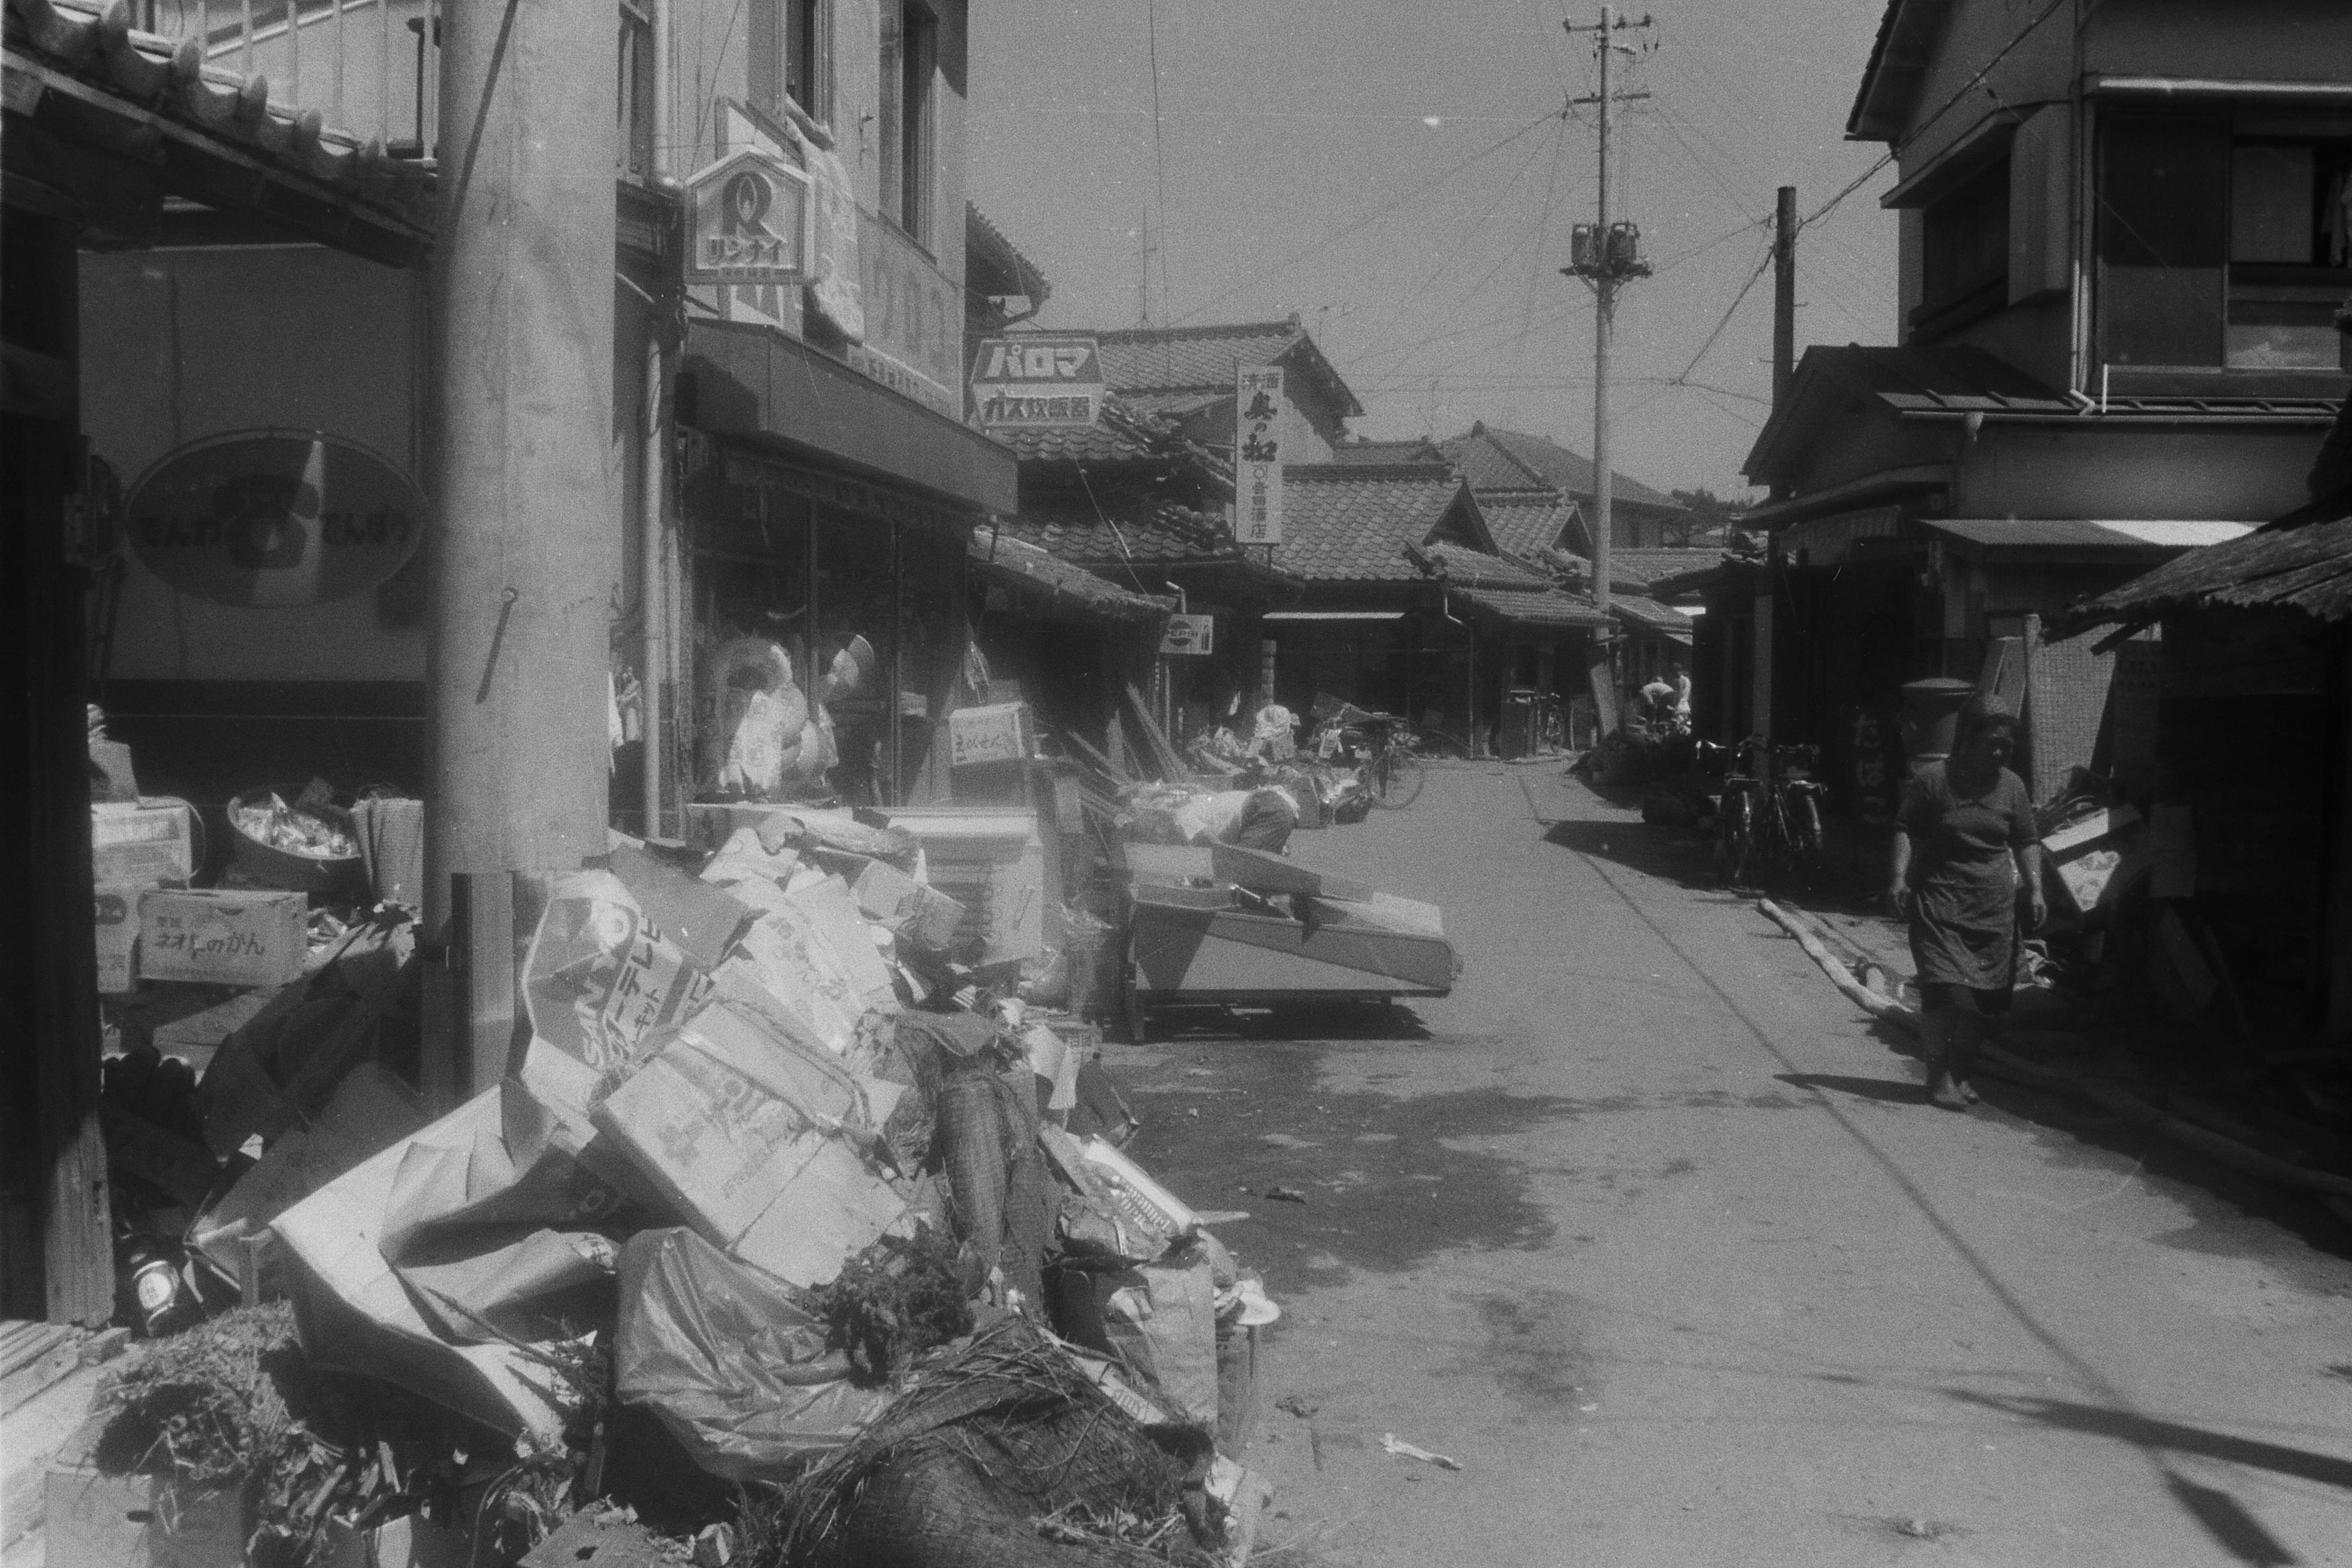 4-1 台風被害の久之浜字北町南方を見る〔昭和47(1972)年8月、いわき市撮影〕